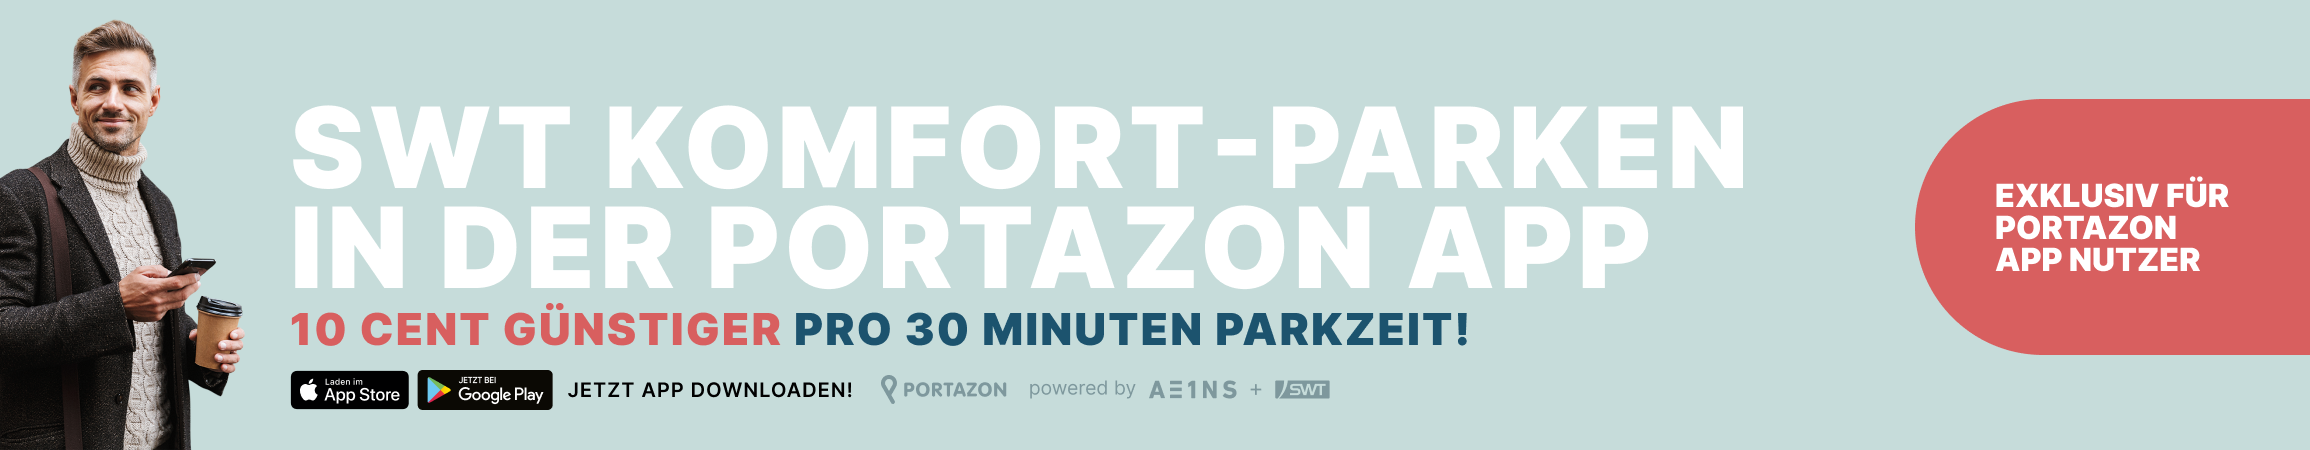 Portazon Banner Komfort Parken